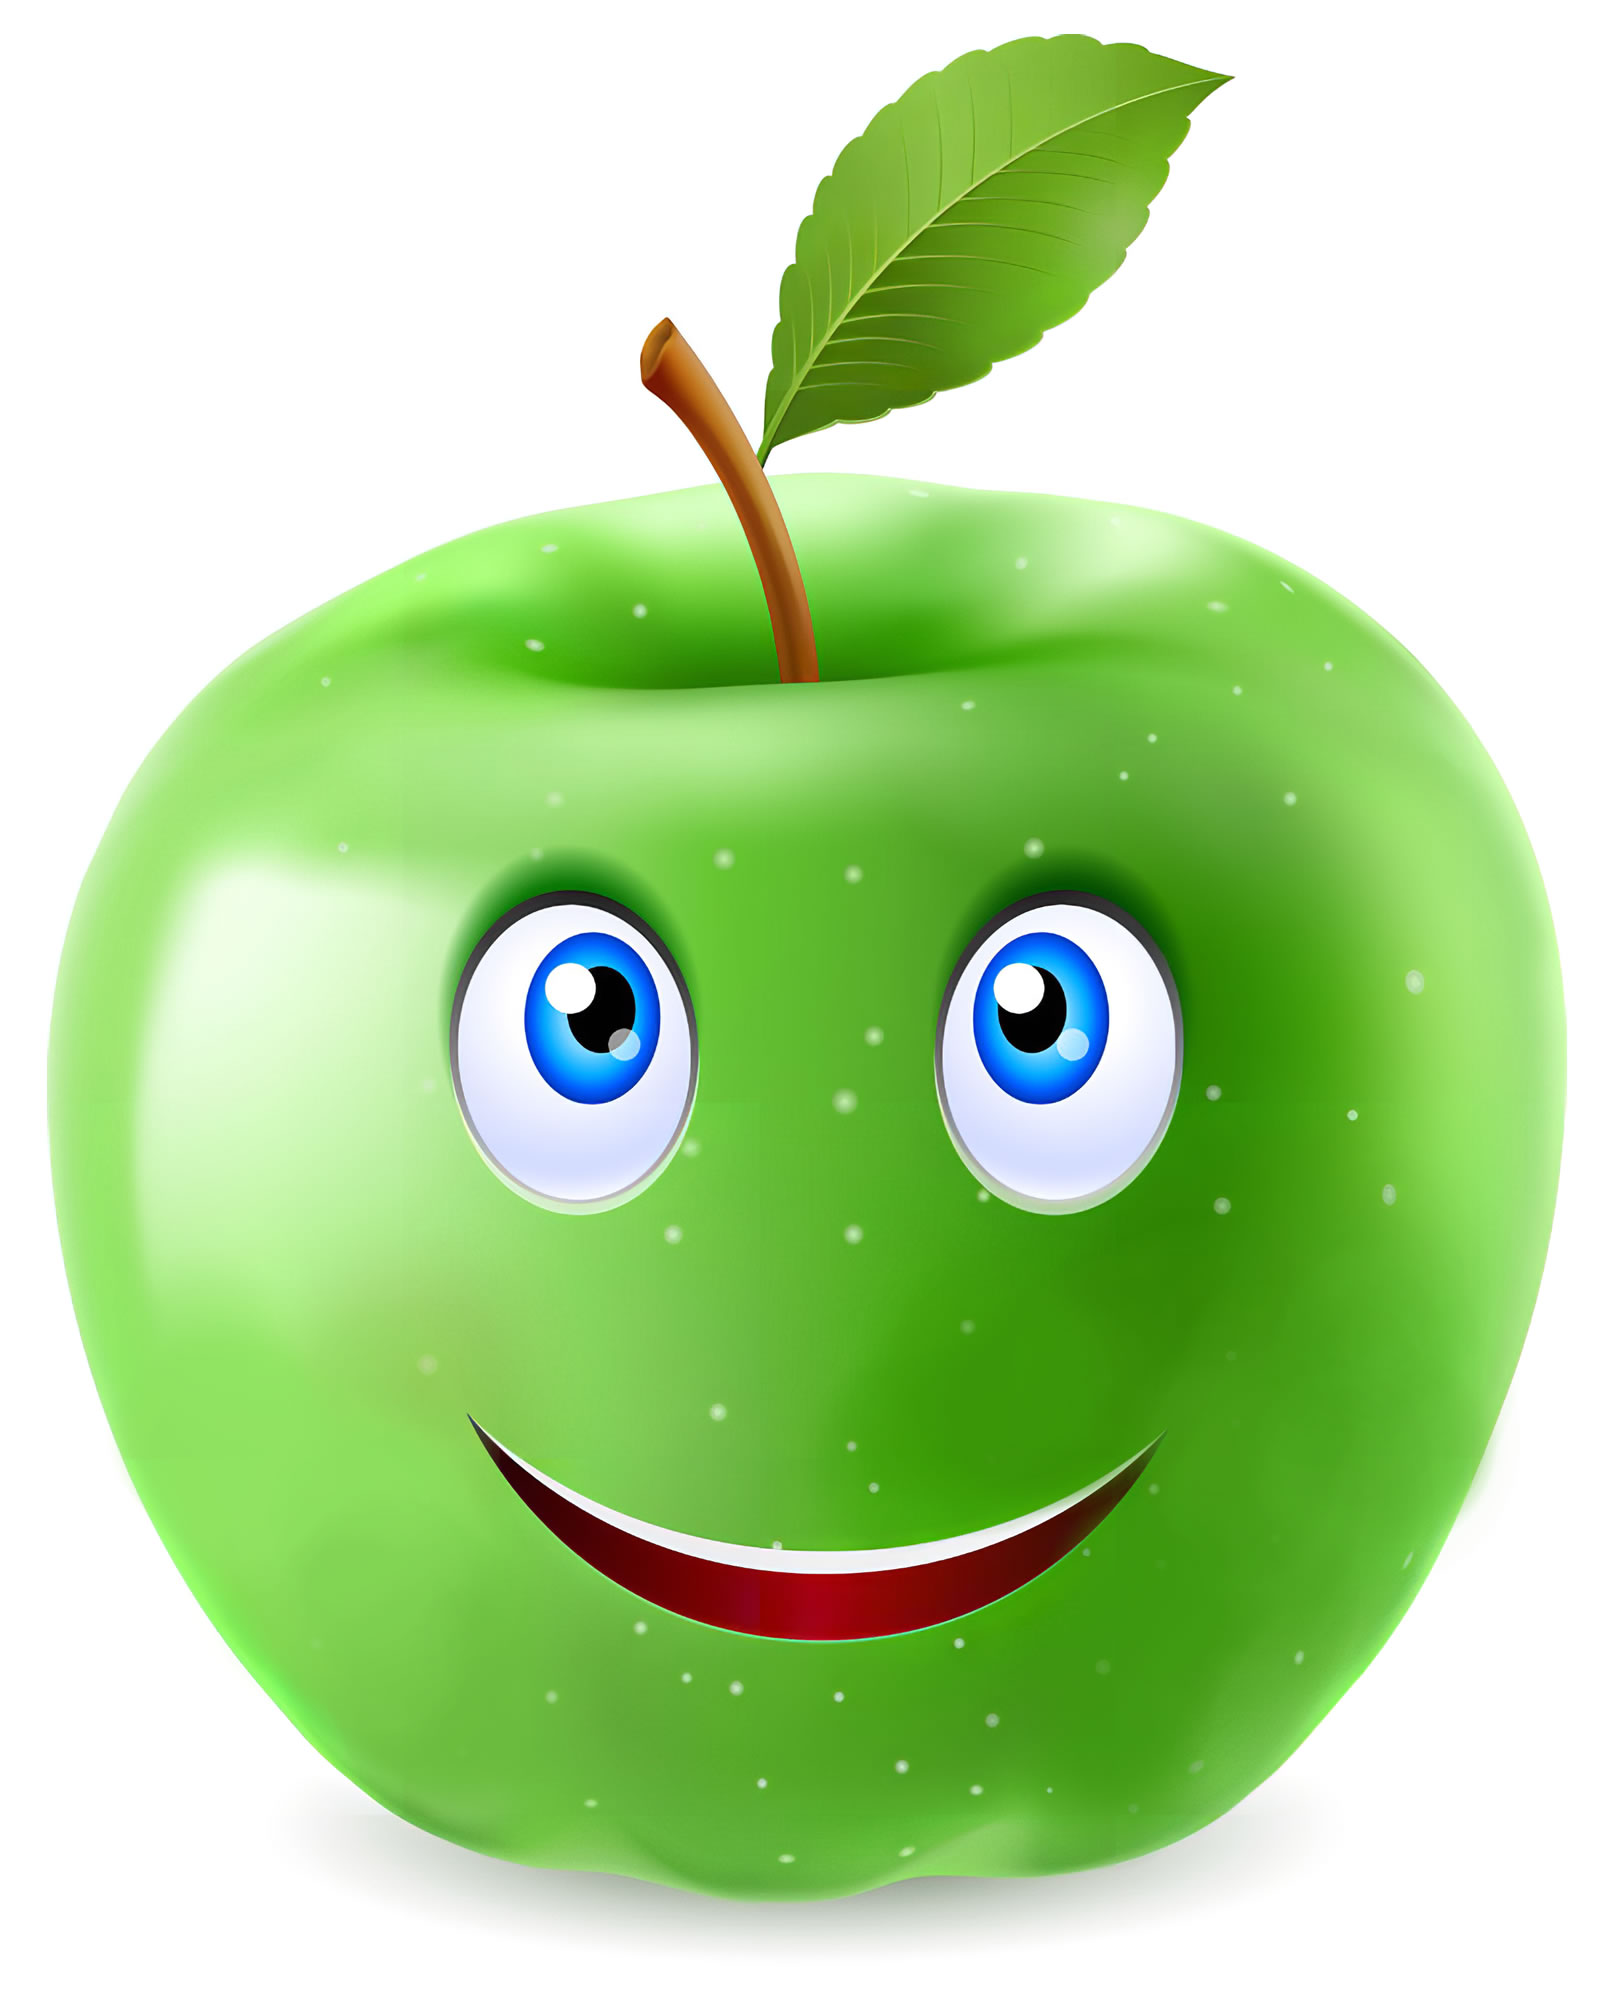 Яблоко с улыбкой картинка для детей